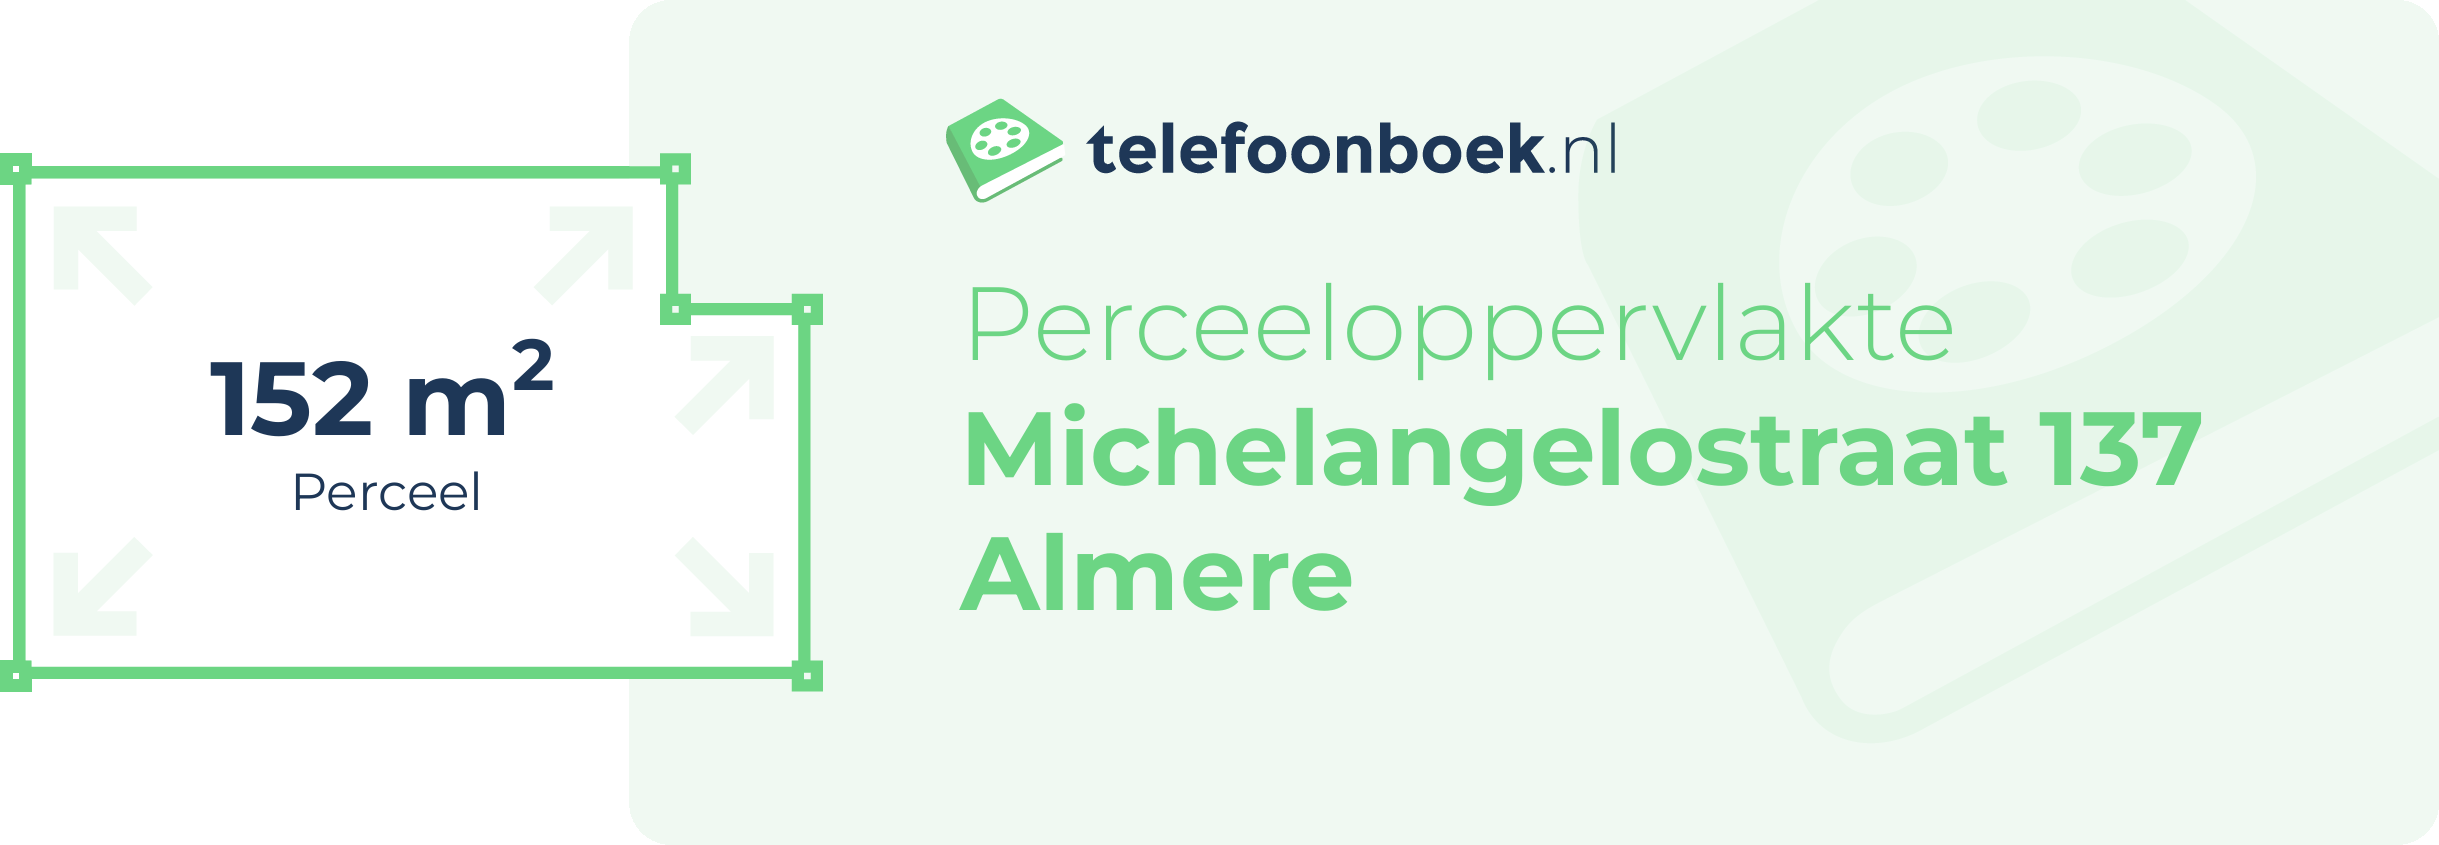 Perceeloppervlakte Michelangelostraat 137 Almere